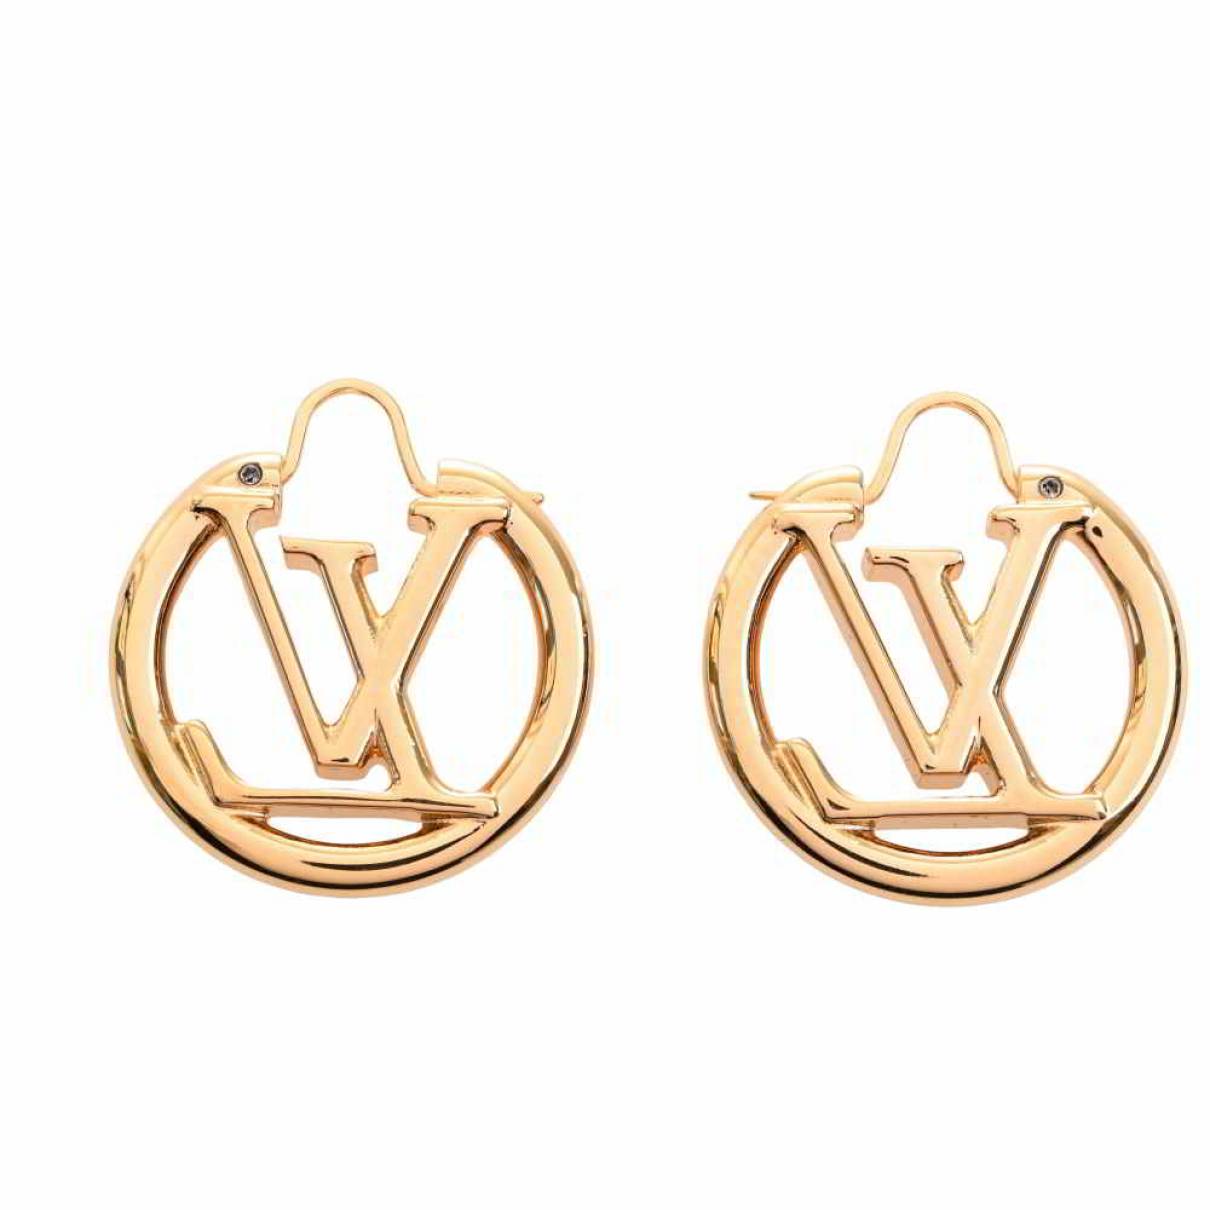 Buy Louis Vuitton Hoop Earrings